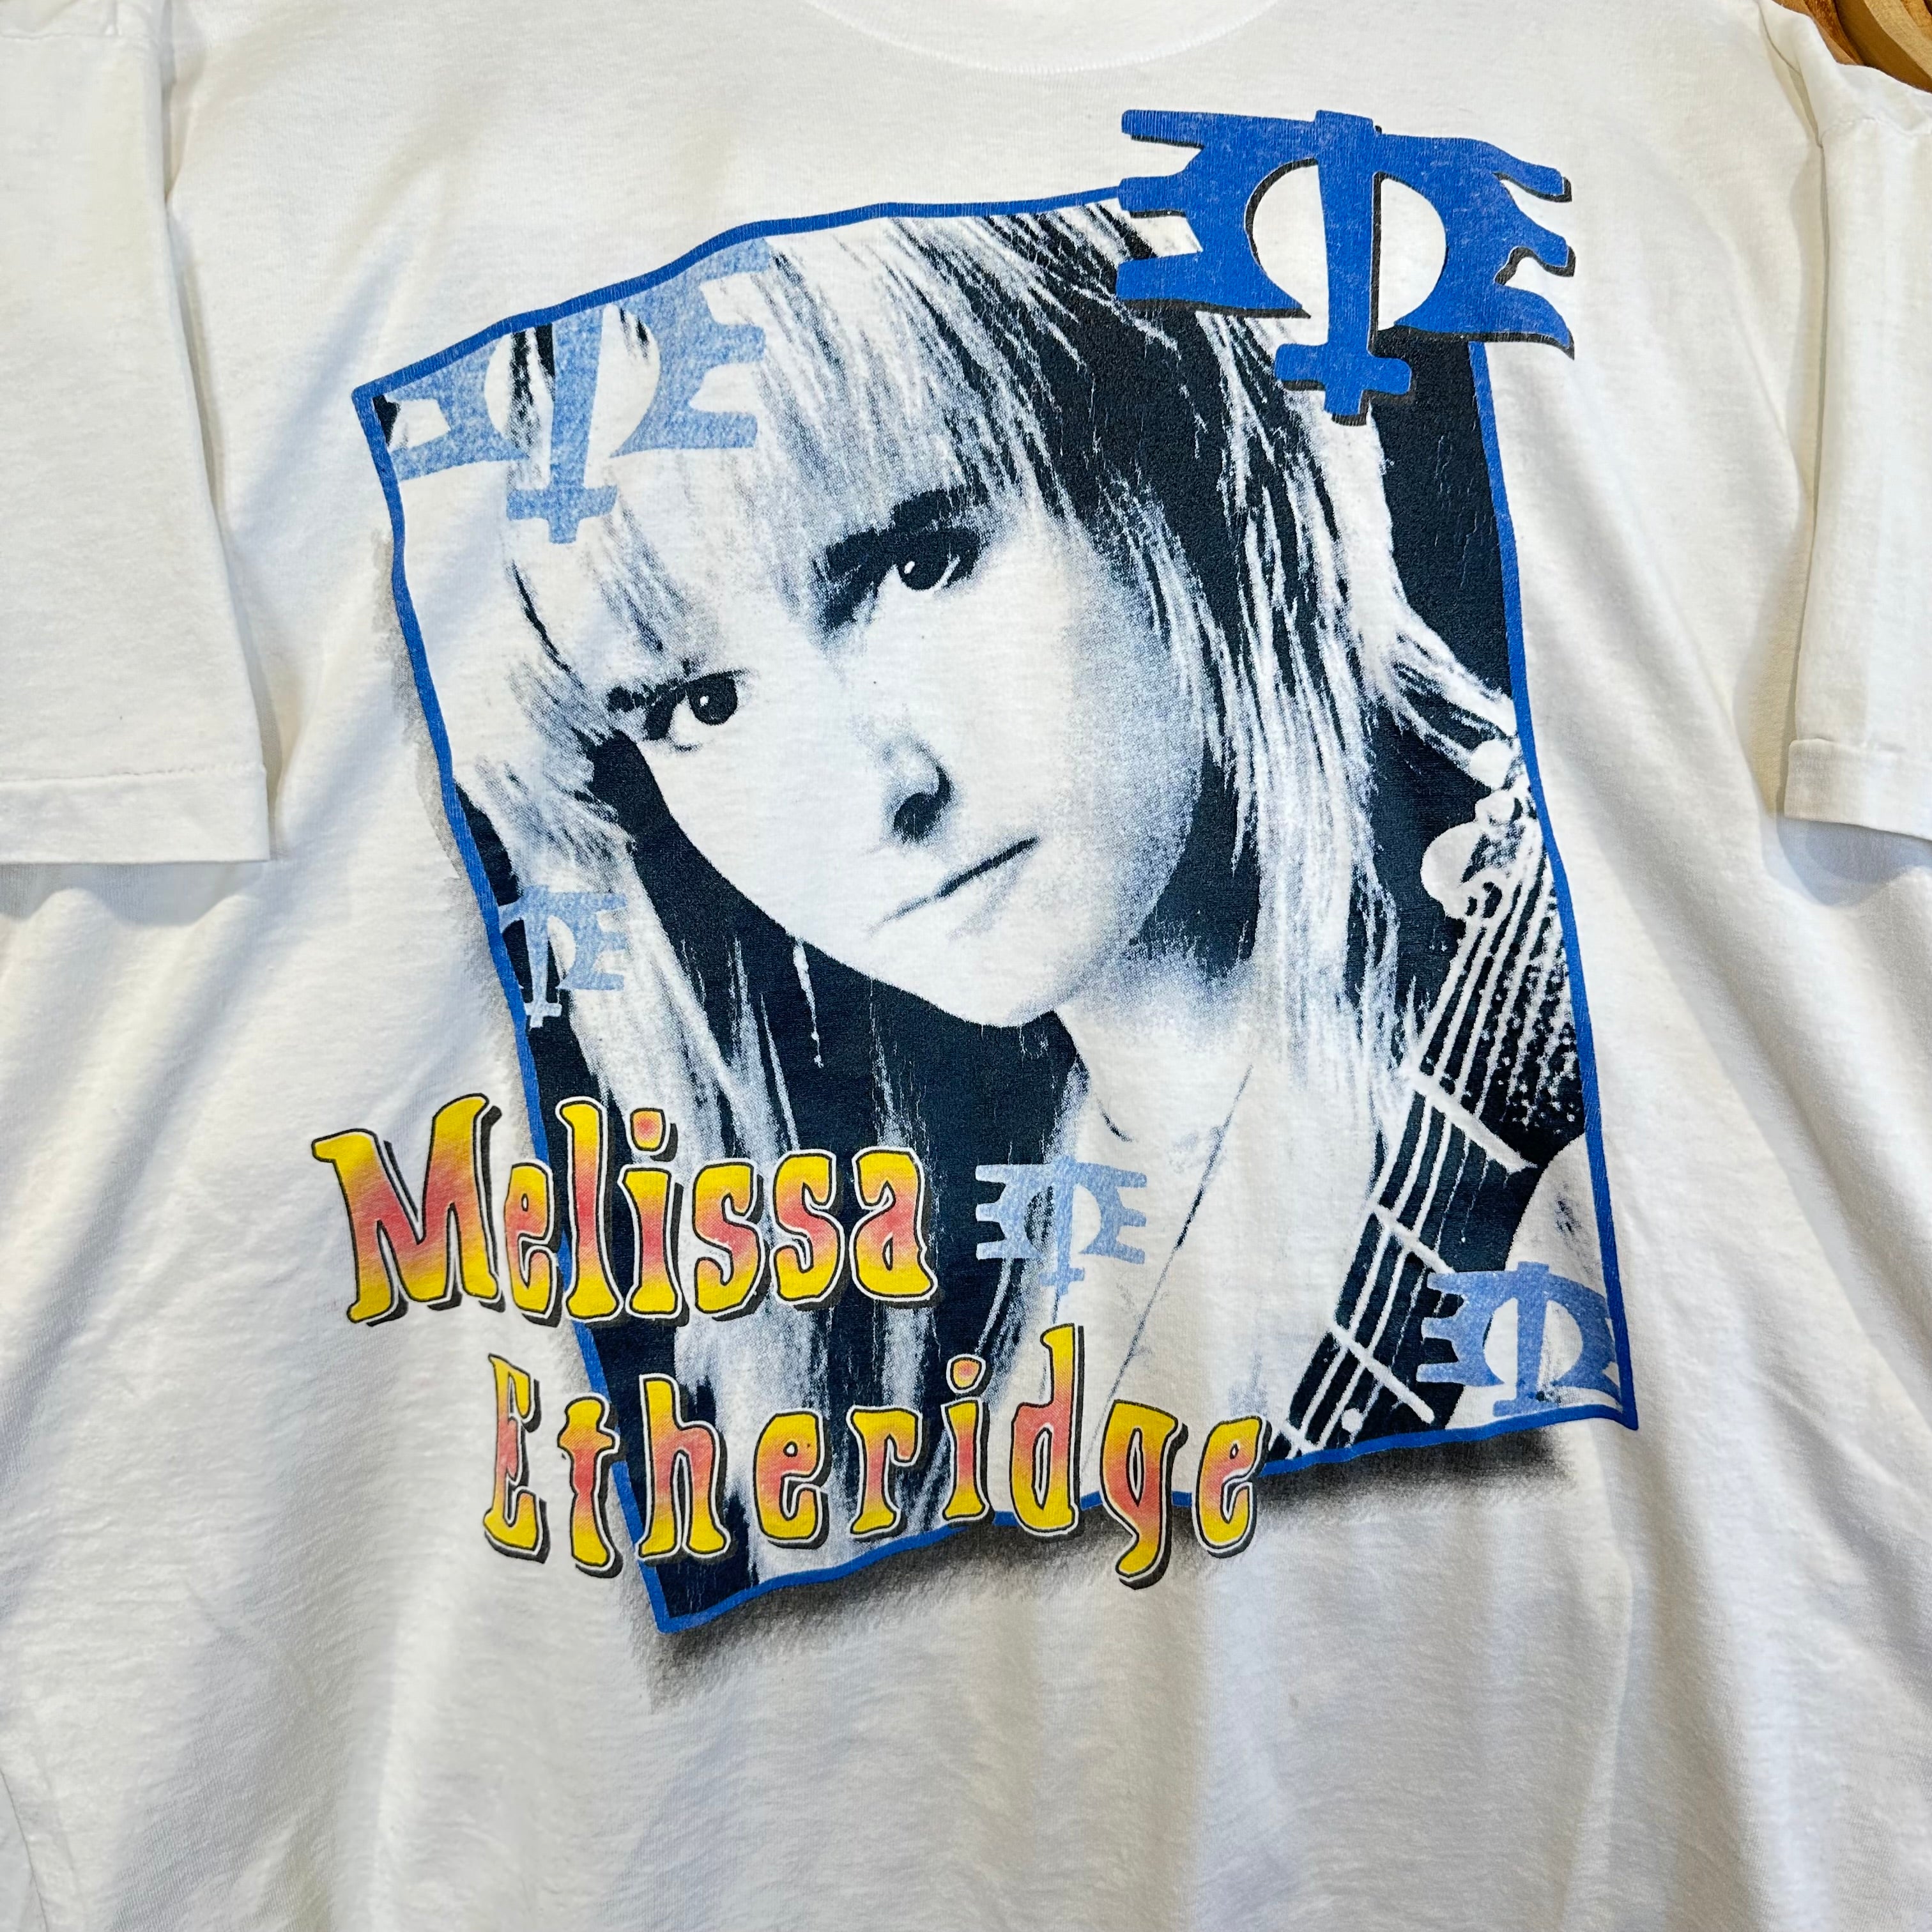 Melissa Etheridge “Yes I am” Tour T-Shirt